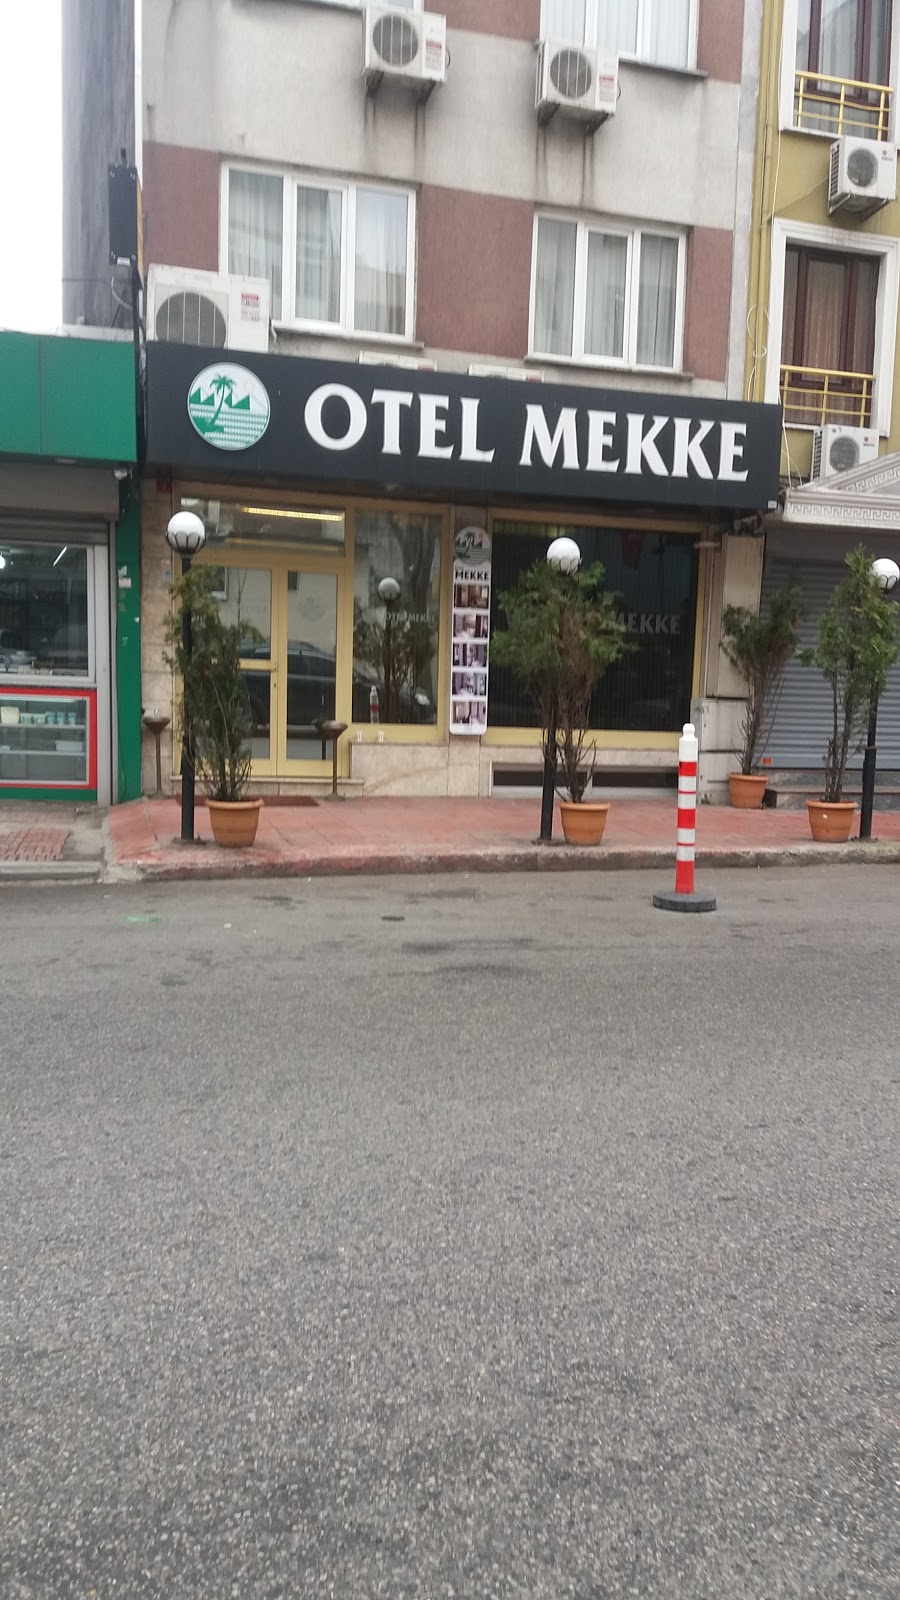 HOTEL MEKKE